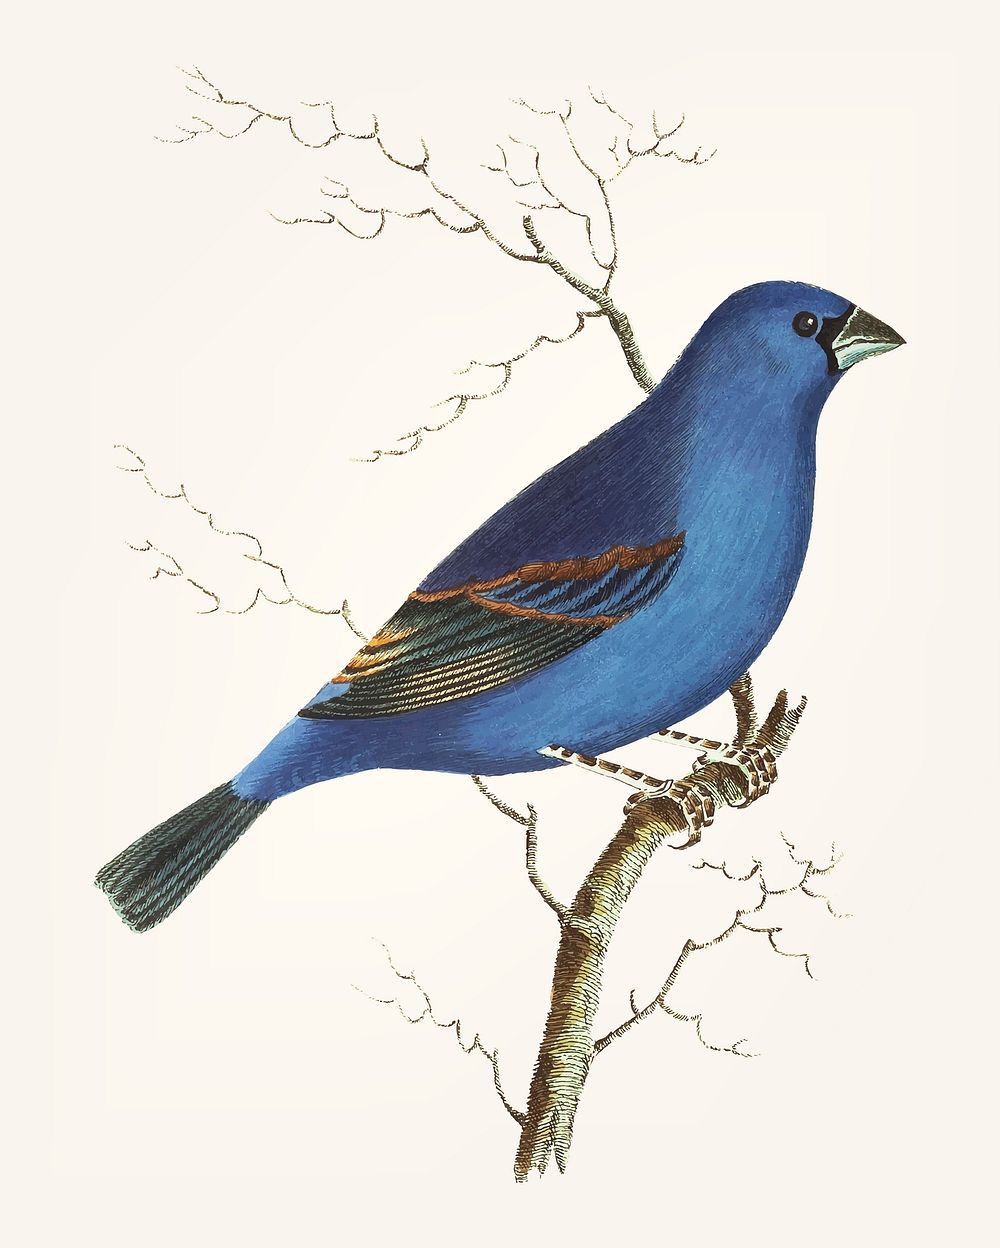 Vintage illustration of deep blue grosbeak